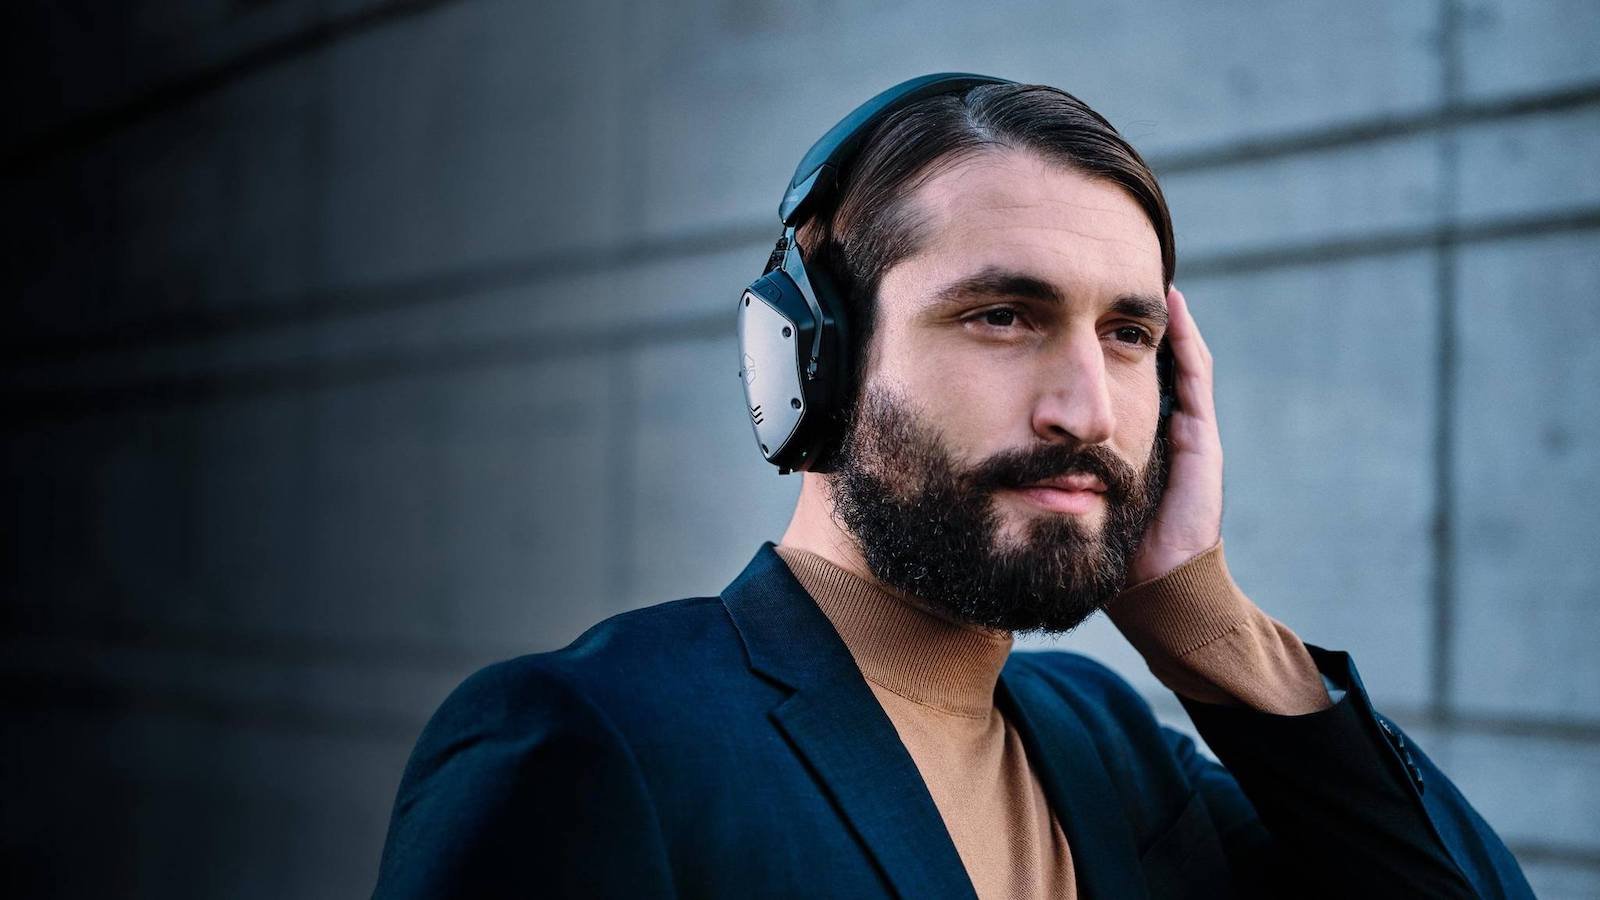 V-MODA M-200 ANC over-ear headphones offer hybrid active noise cancelation